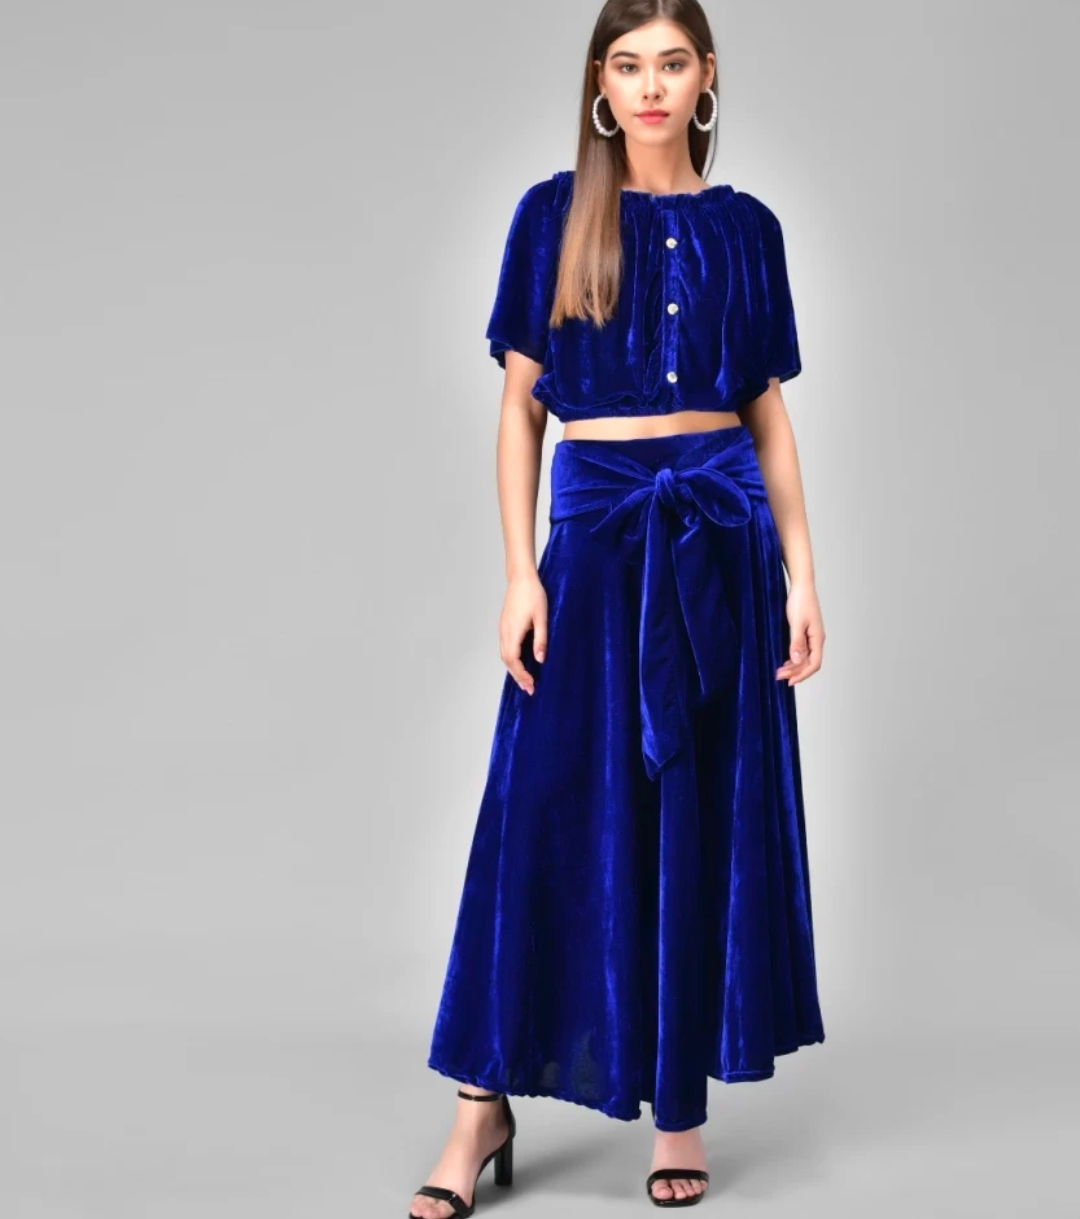 westchic Women Top and Skirt Set - Buy westchic Women Top and Skirt Set Online at Best Prices in India | Flipkart.com